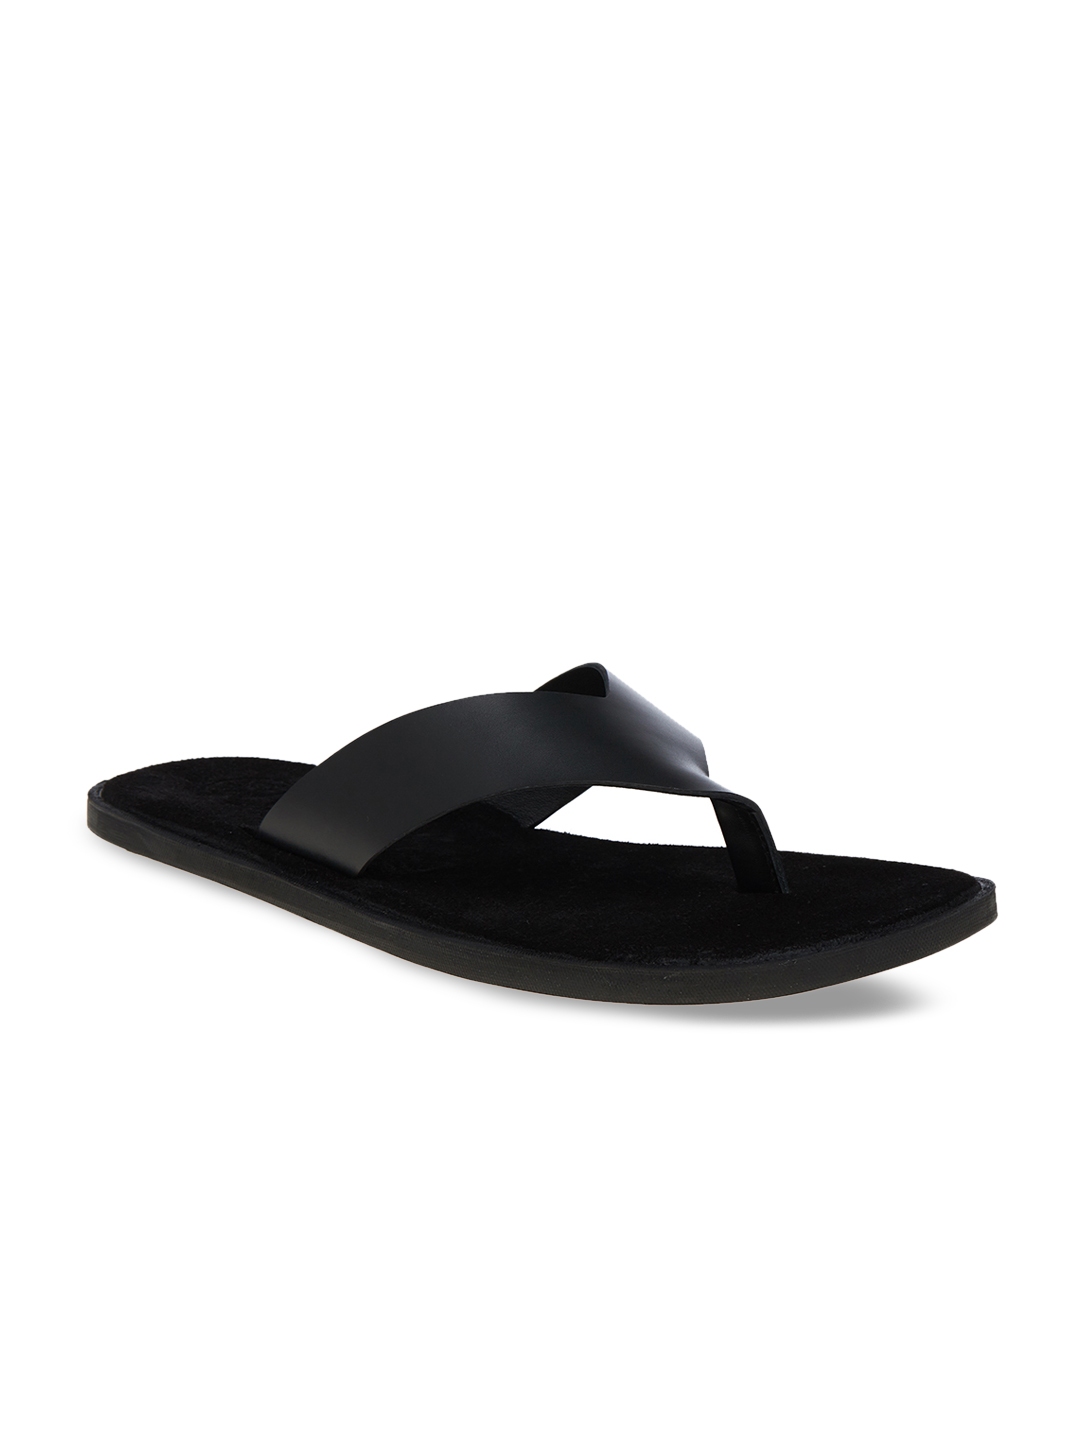 Buy SKO Men Black Leather Comfort Sandals - Sandals for Men 7299061 ...